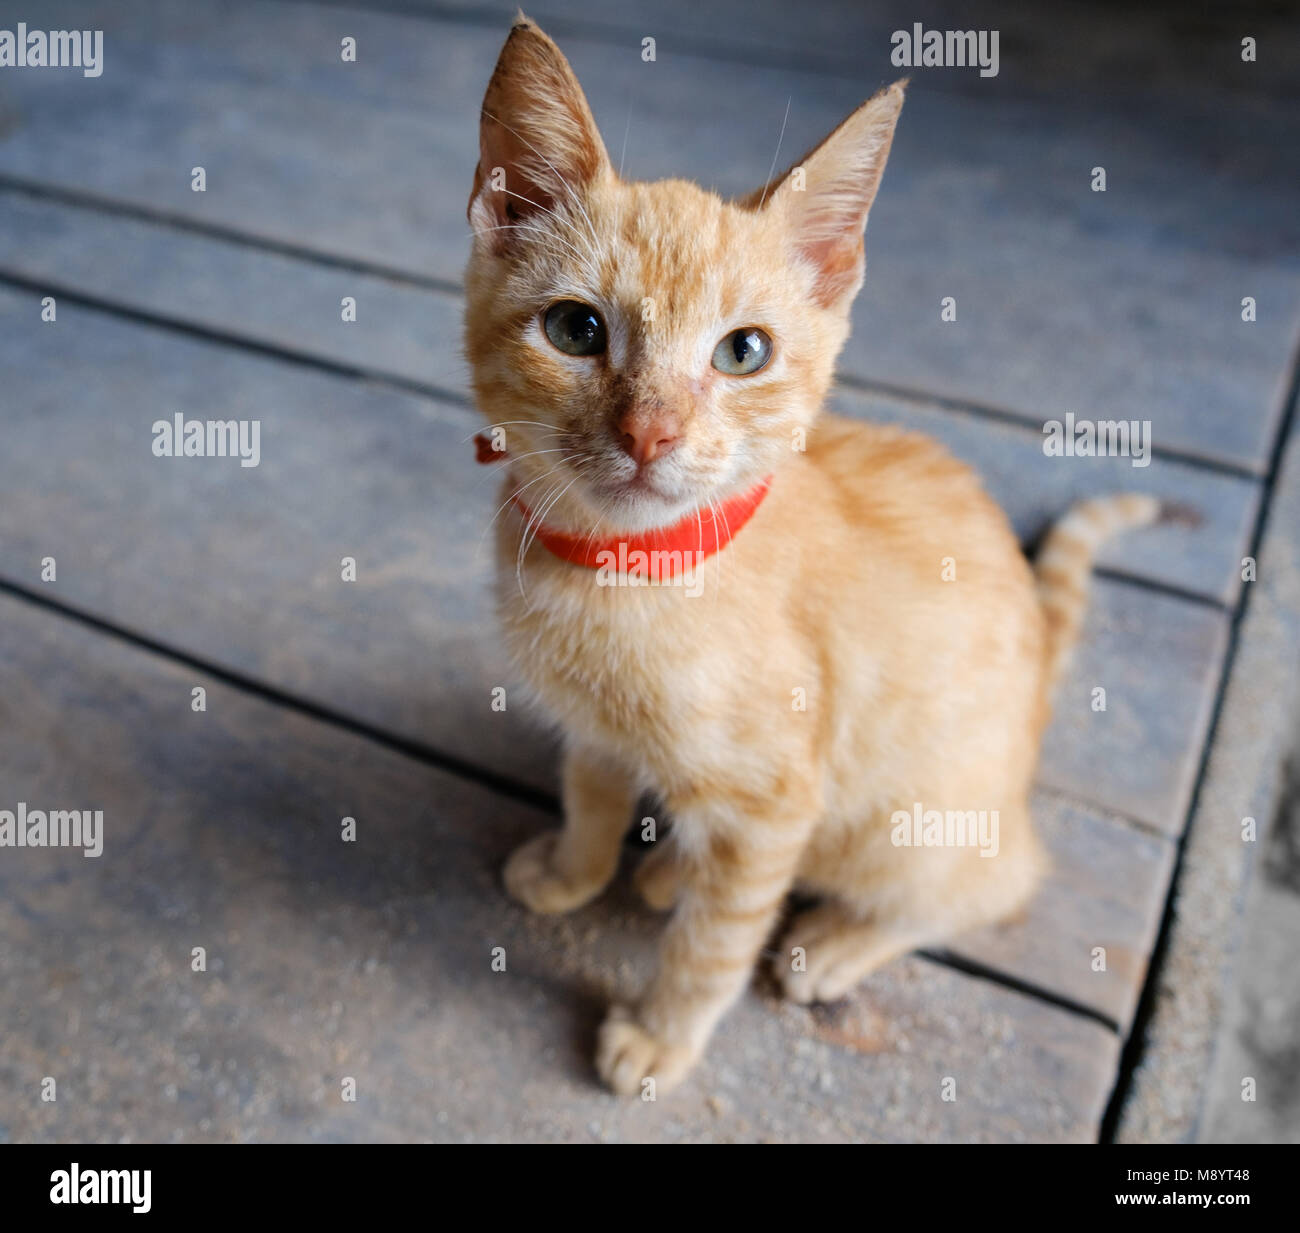 Junge rote Katze auf Holz- Hintergrund nach oben geschaut - orange Kitty - Stockfoto